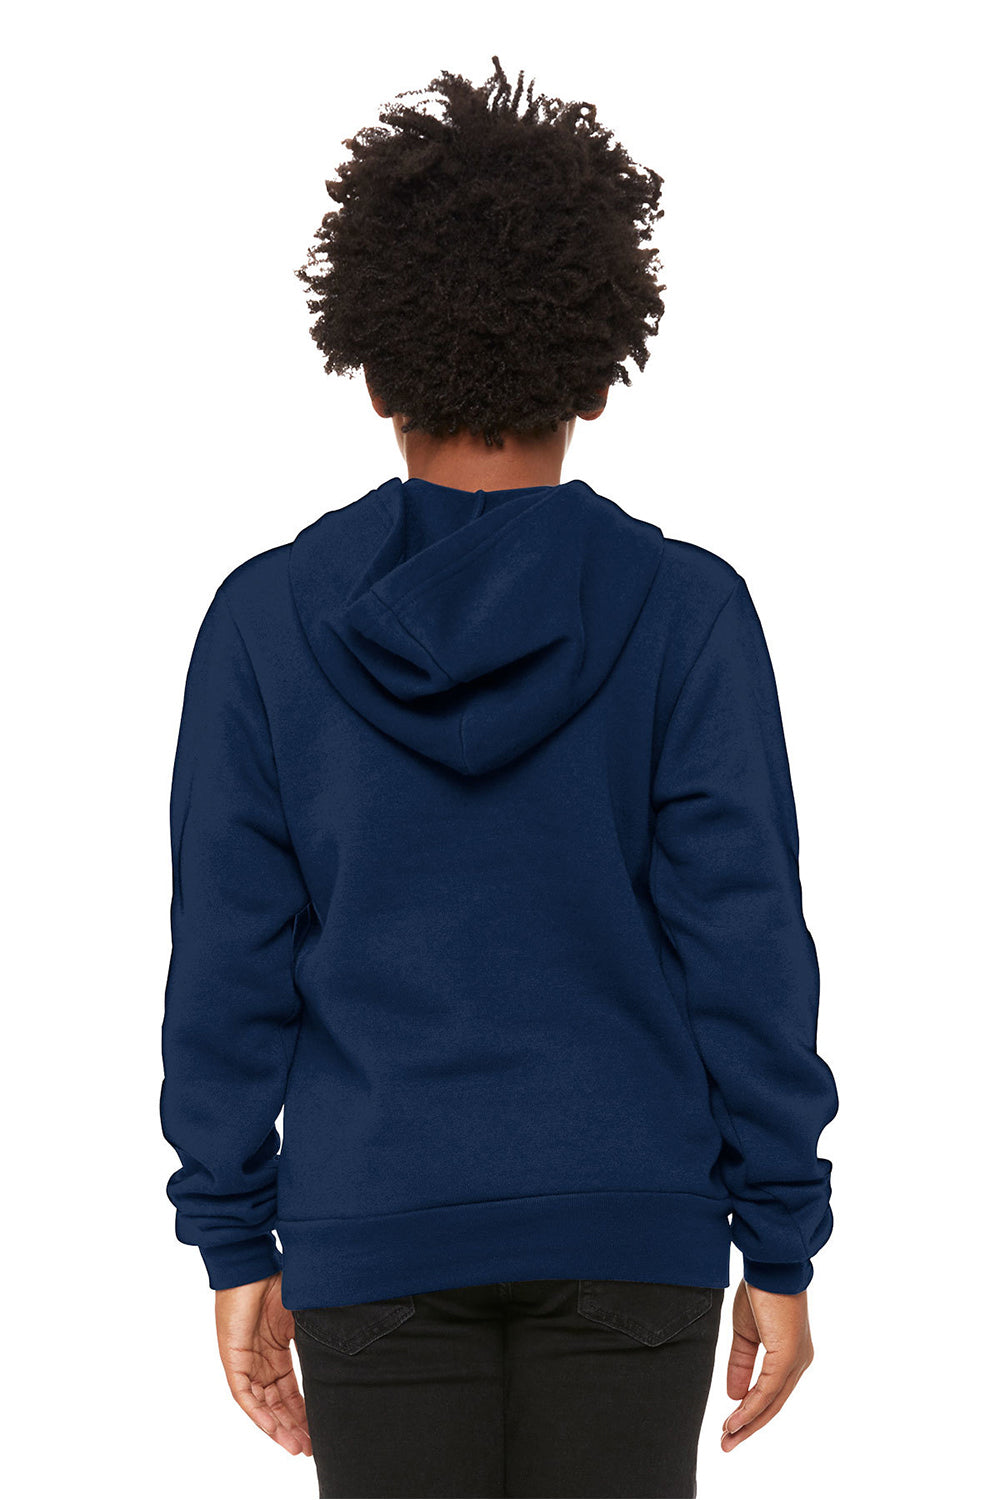 Bella + Canvas 3719Y/BC3719Y Youth Sponge Fleece Hooded Sweatshirt Hoodie Navy Blue Model Back